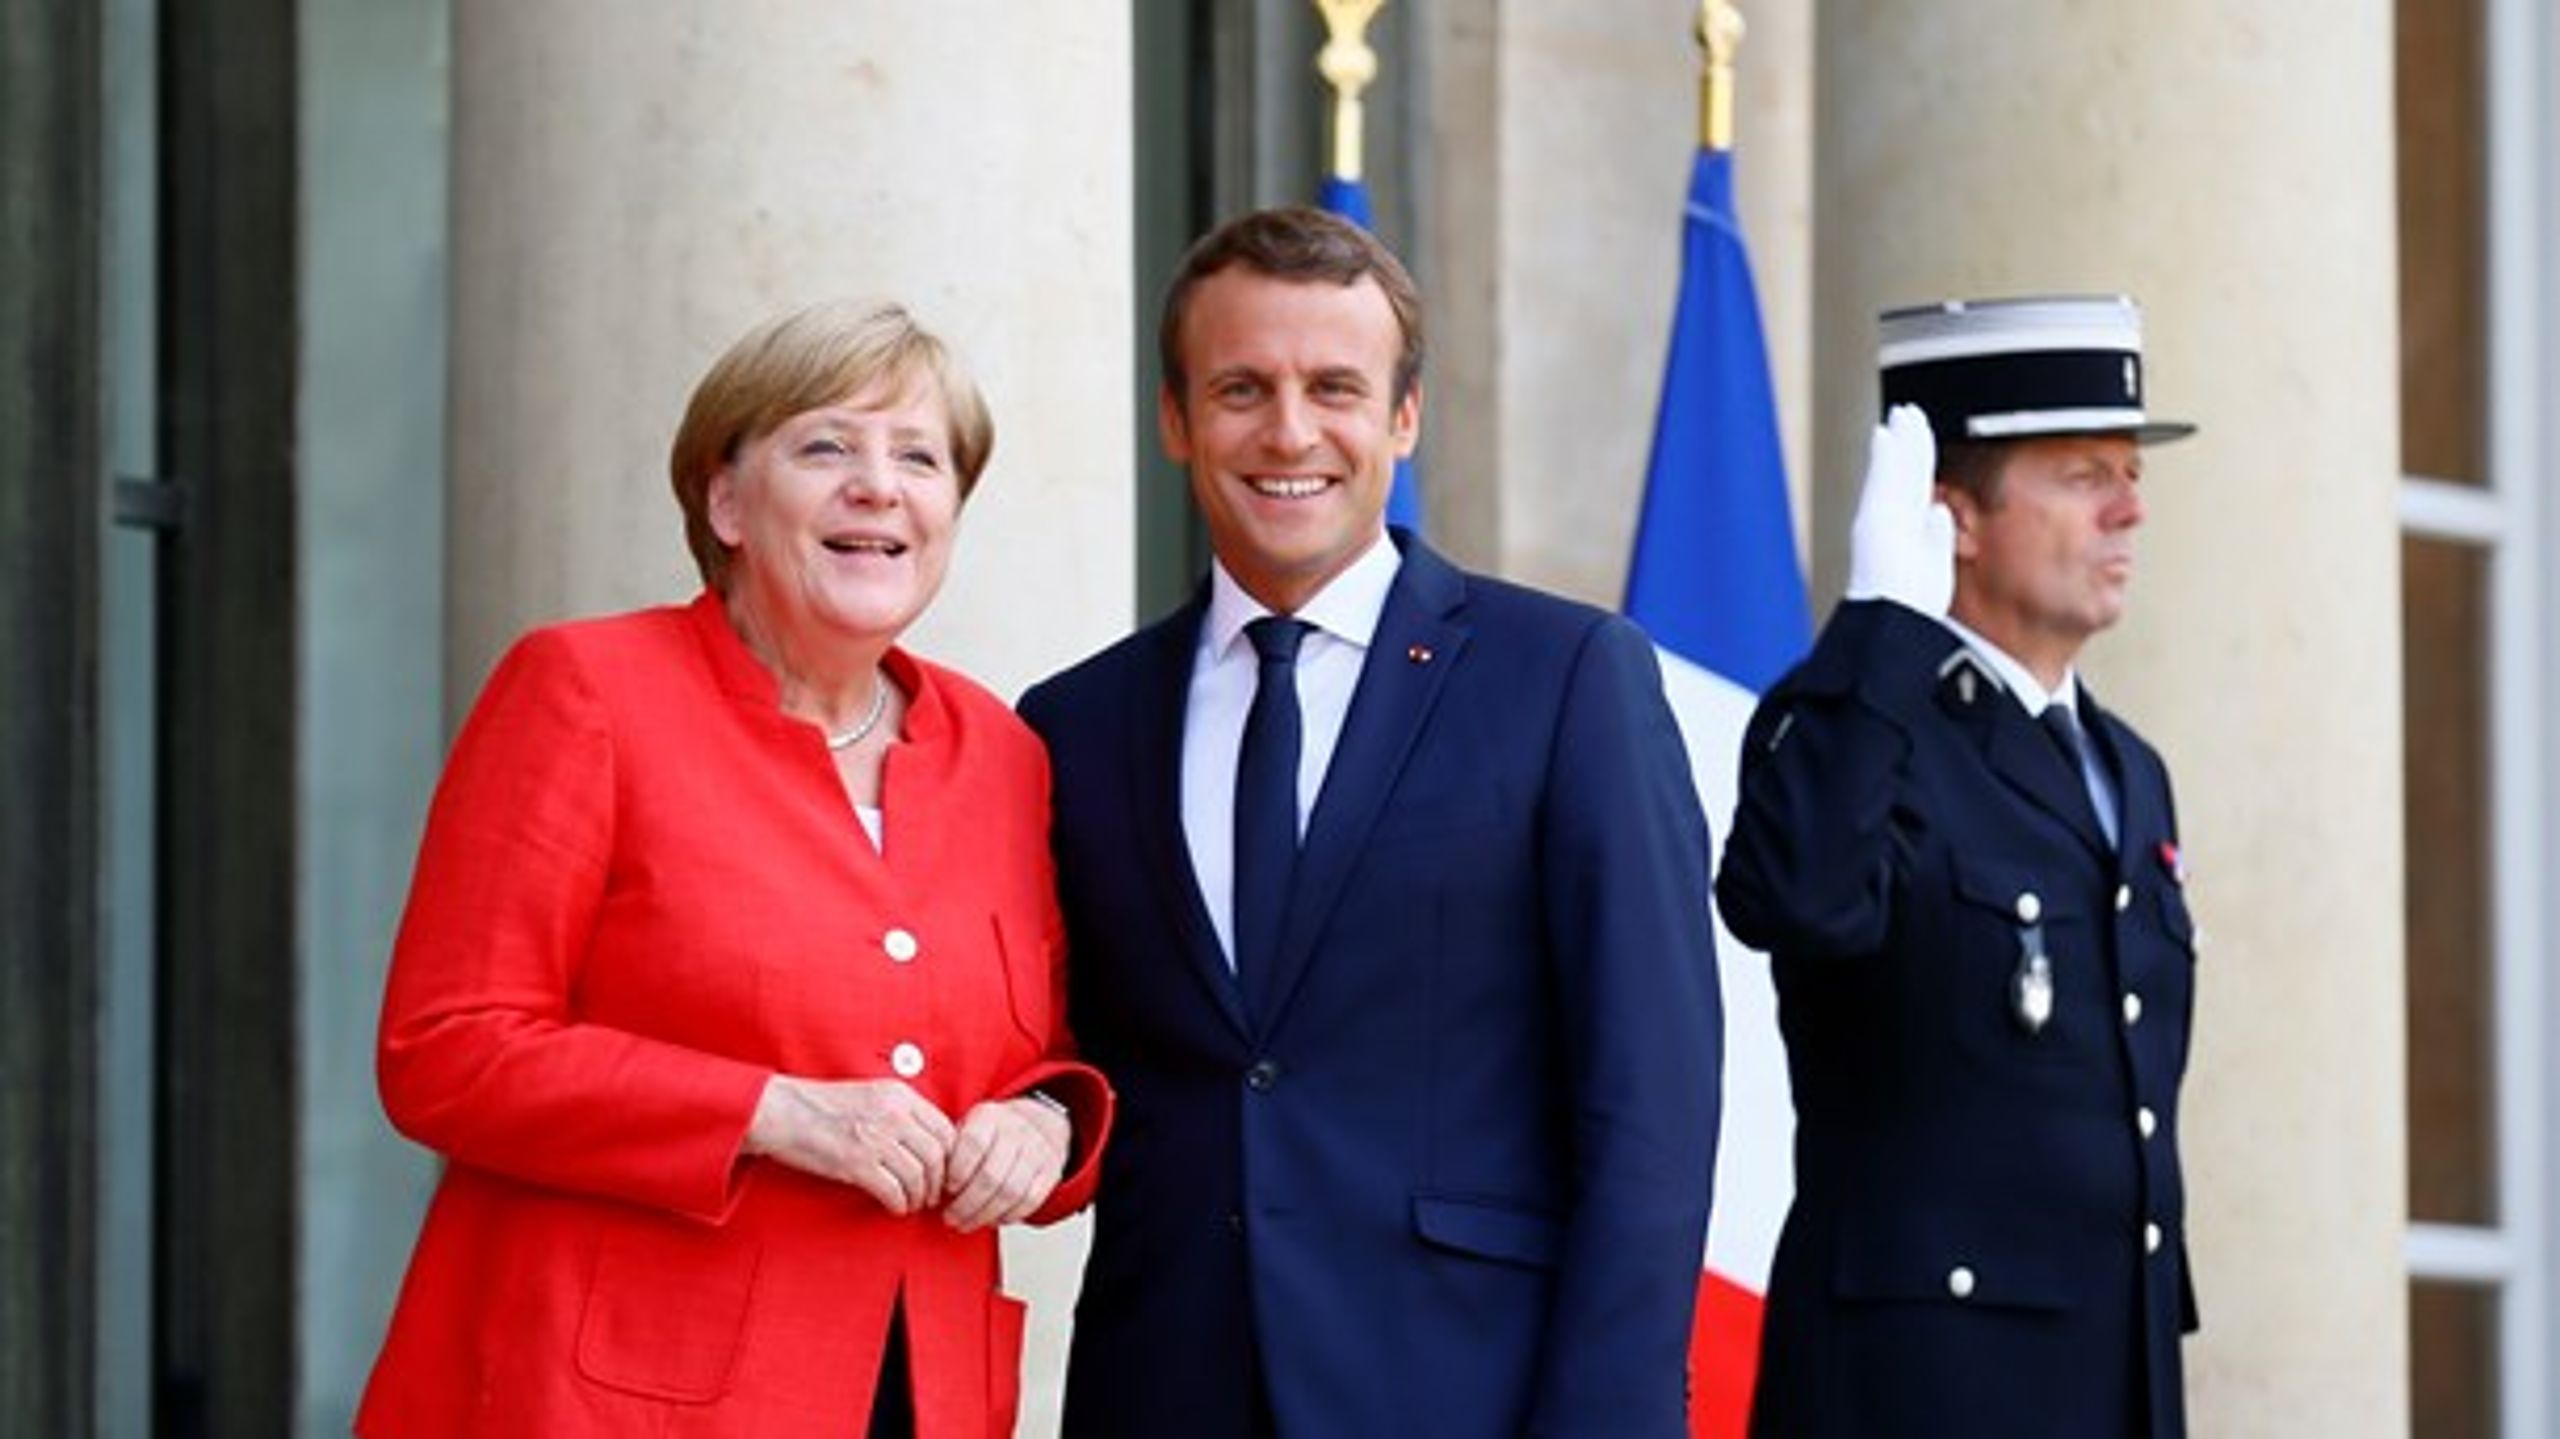 På trods af Tysklands langsommelige regeringsforhandlinger, så er chancerne for at fremtidssikre EU med Macron og Merkel i spidsen større end nogensinde før, skriver Andreas W. Mygind.&nbsp;